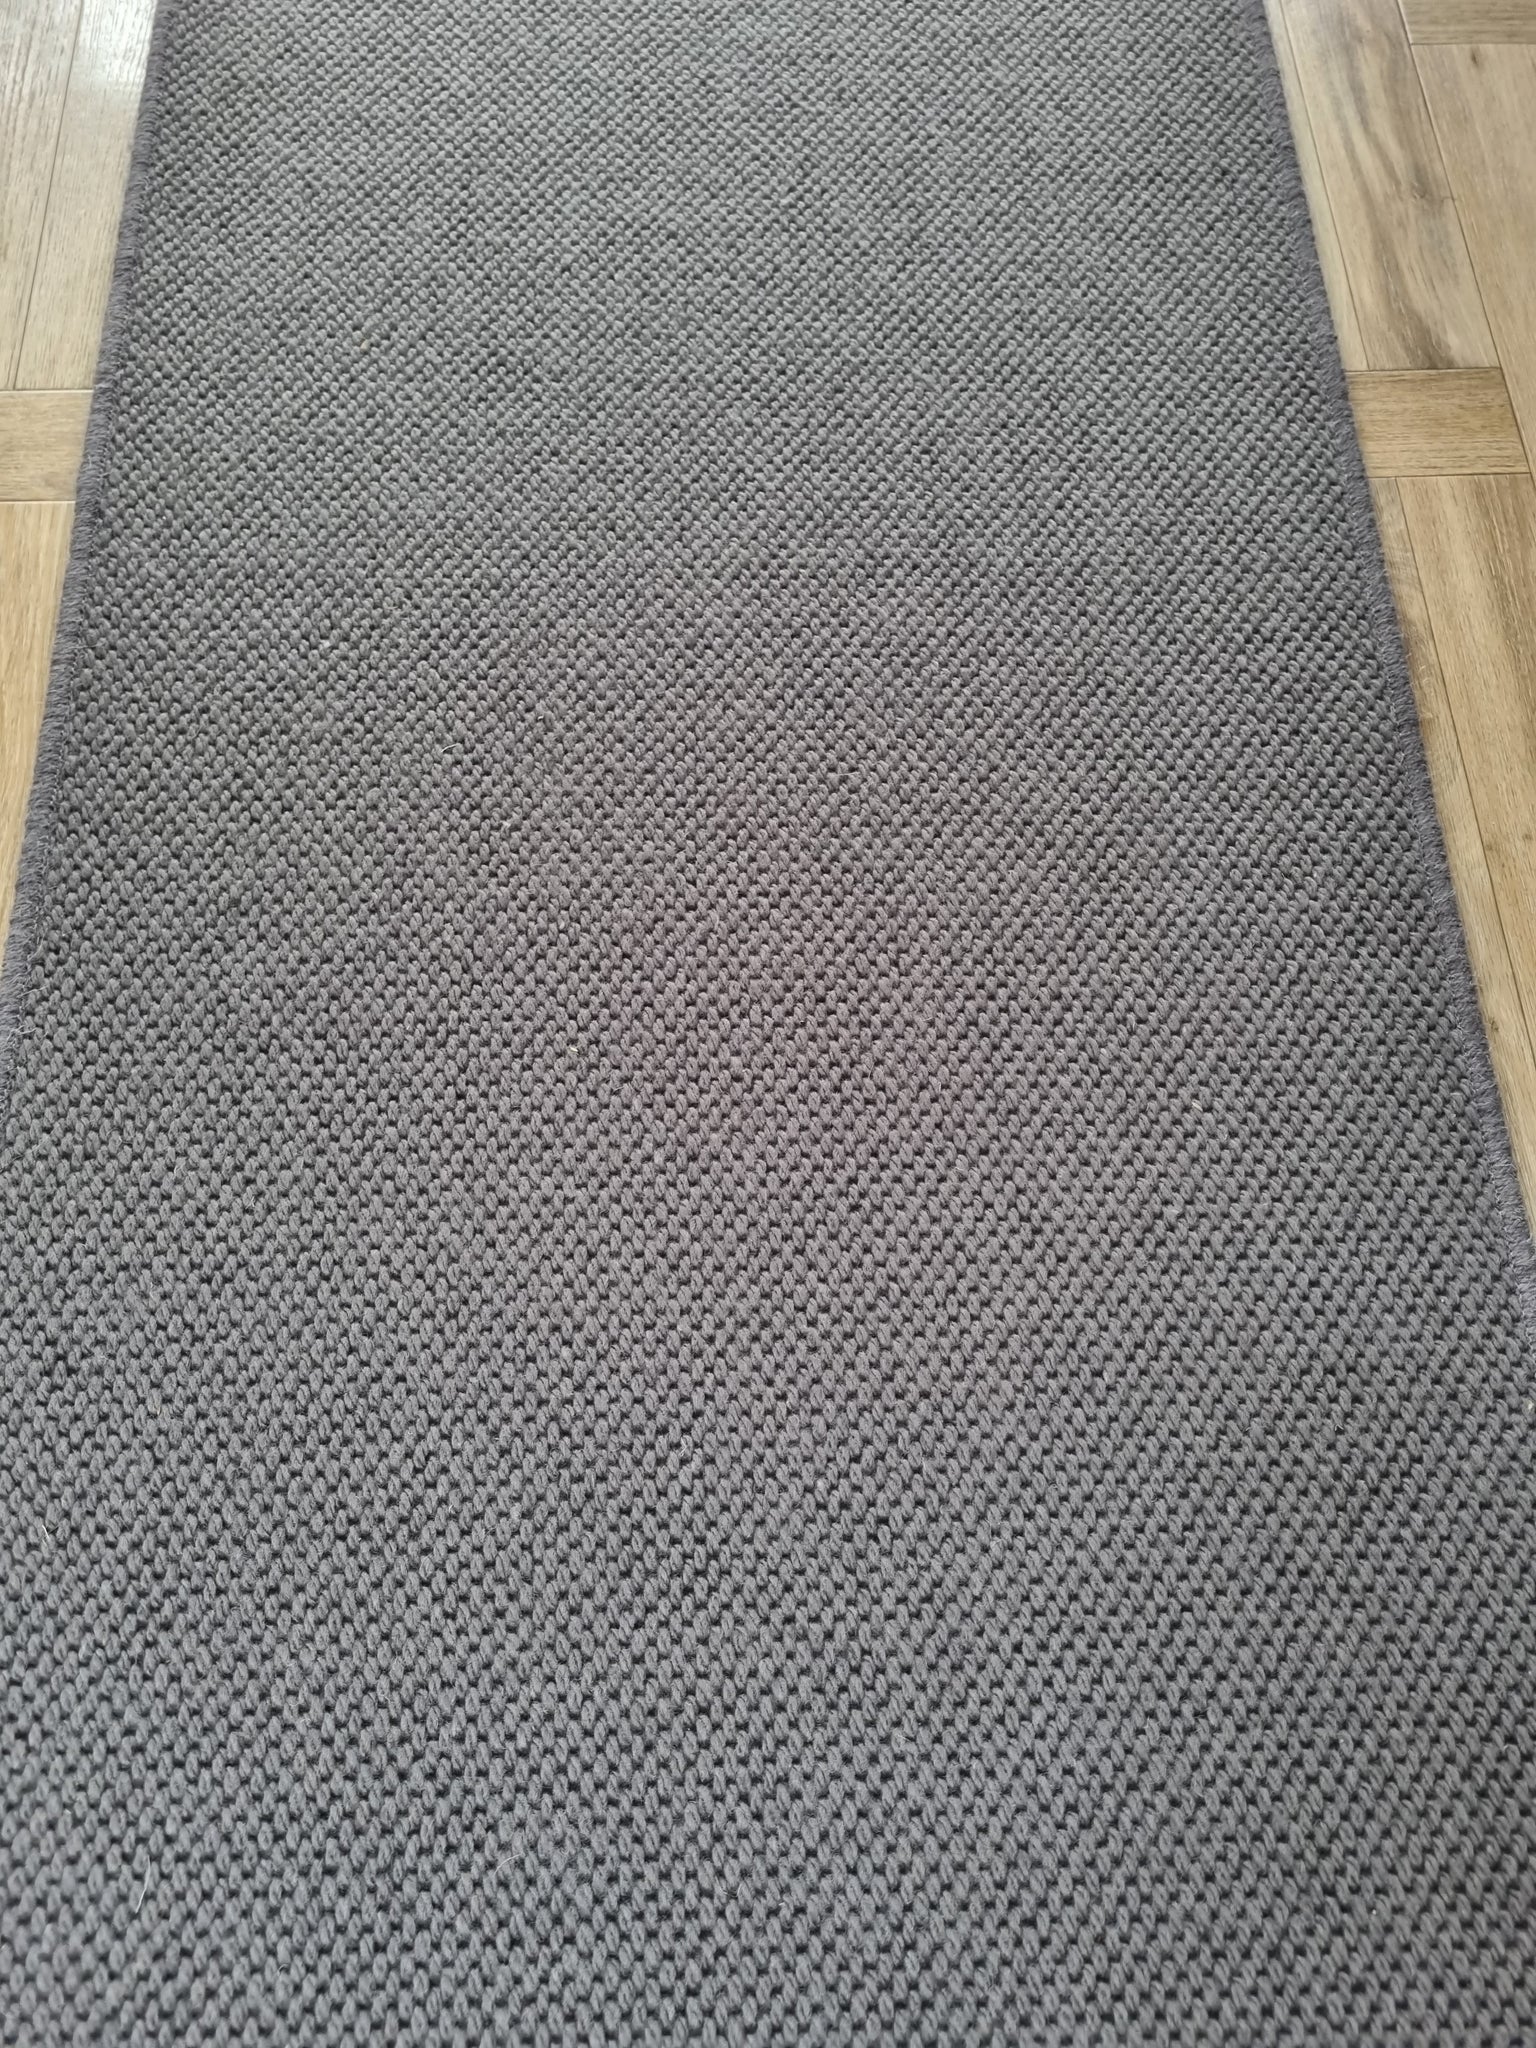 100% wool carpet